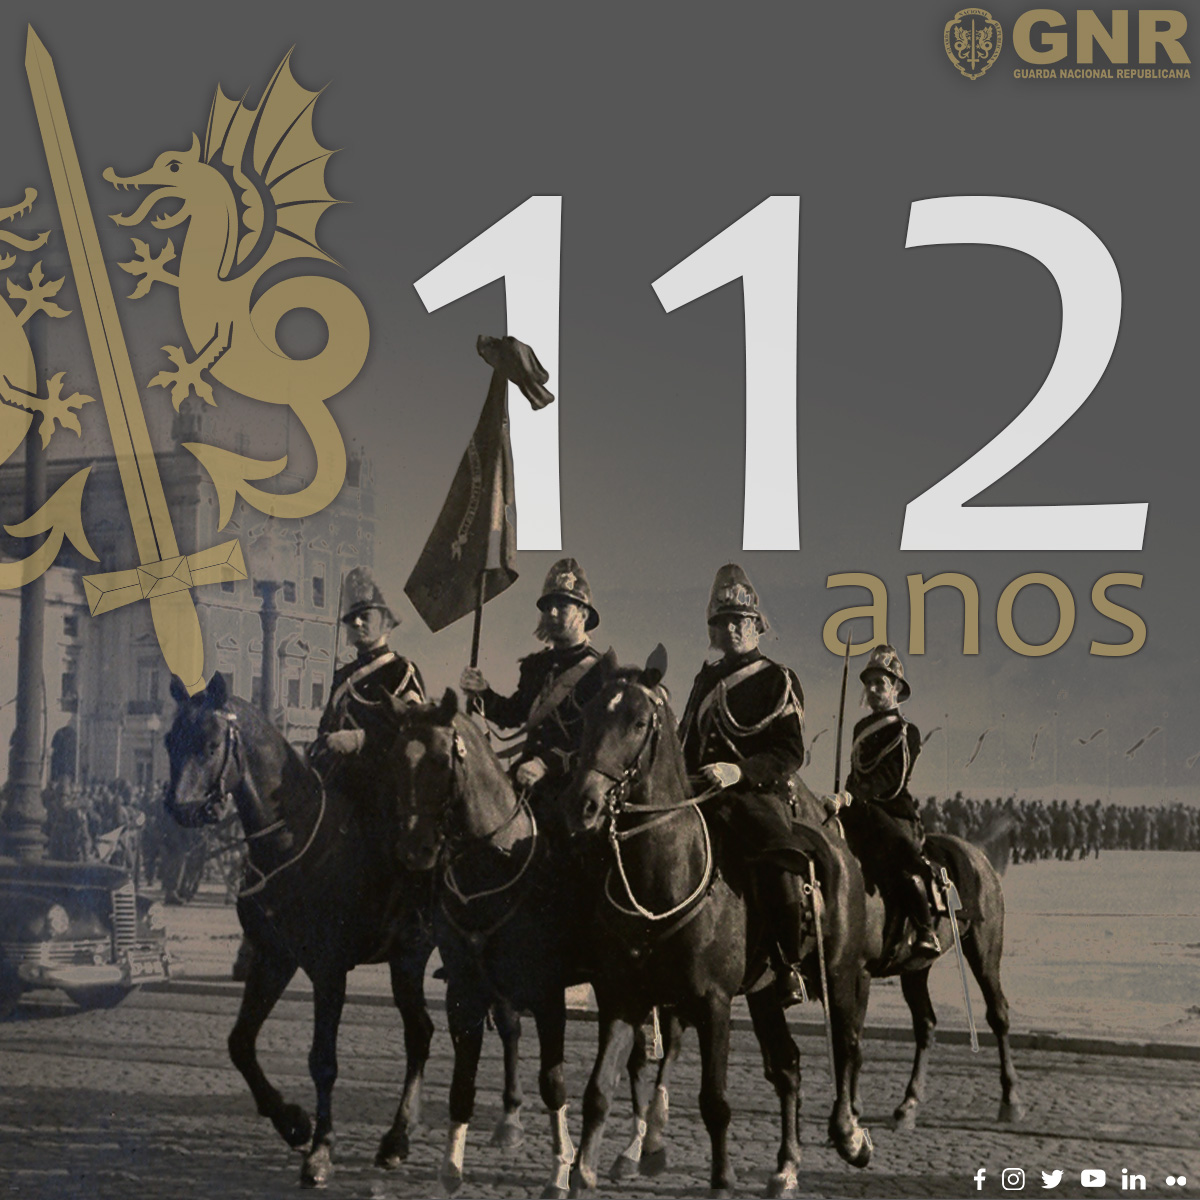 GNR | Cerimónia militar do 112.º aniversário da GNR